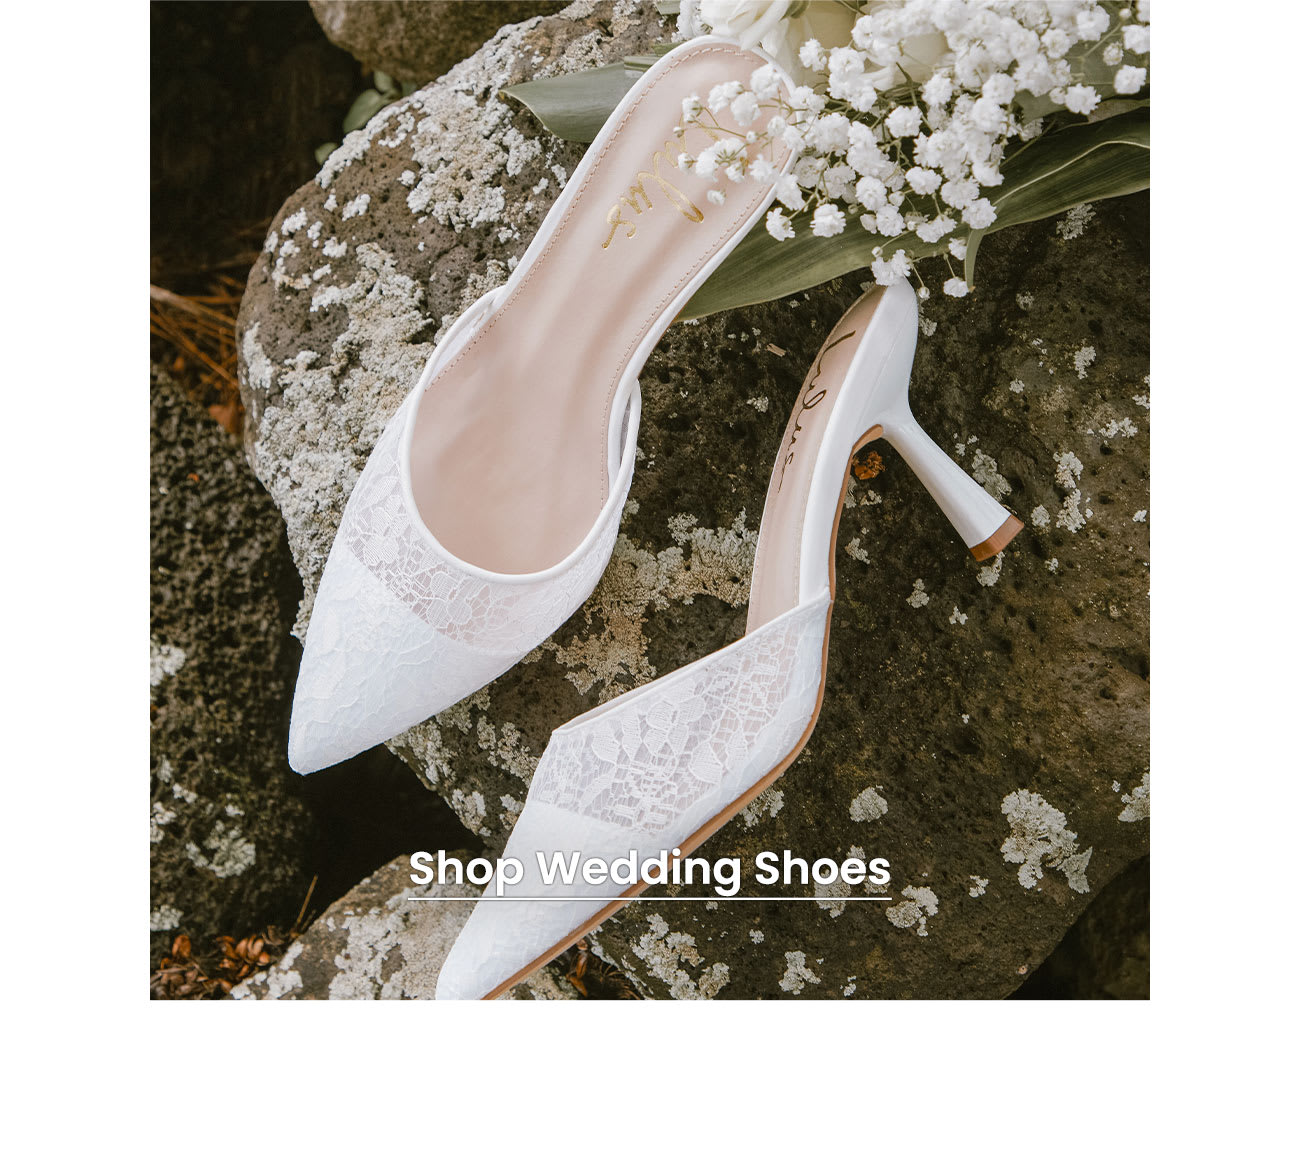 Shop Wedding Shoes